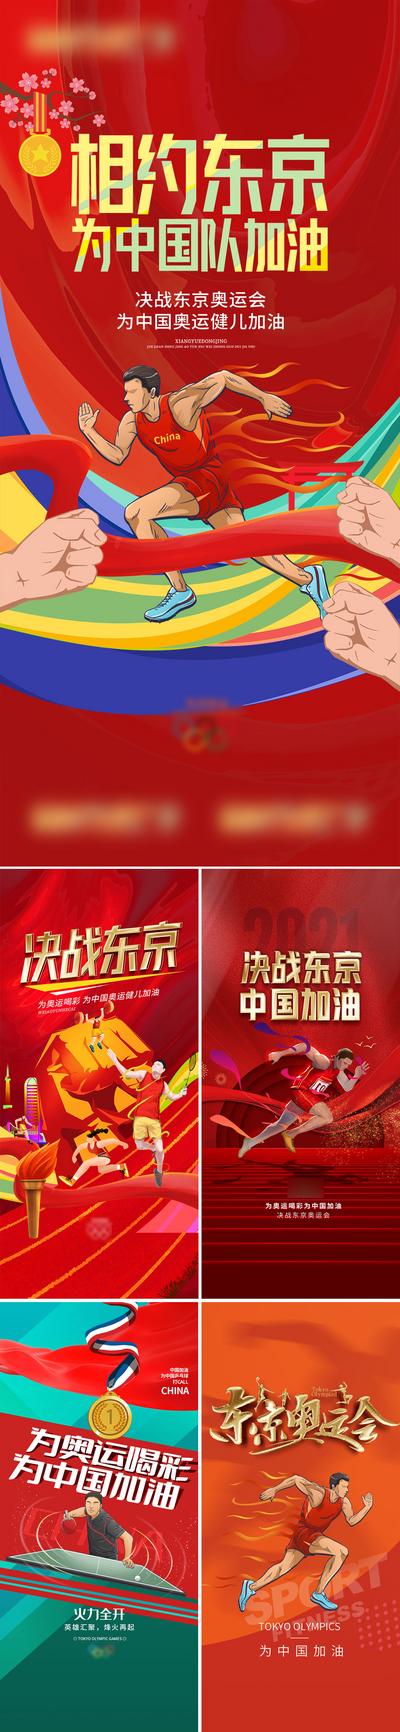 南门网 海报 东京 奥运会 中国加油 插画 红金